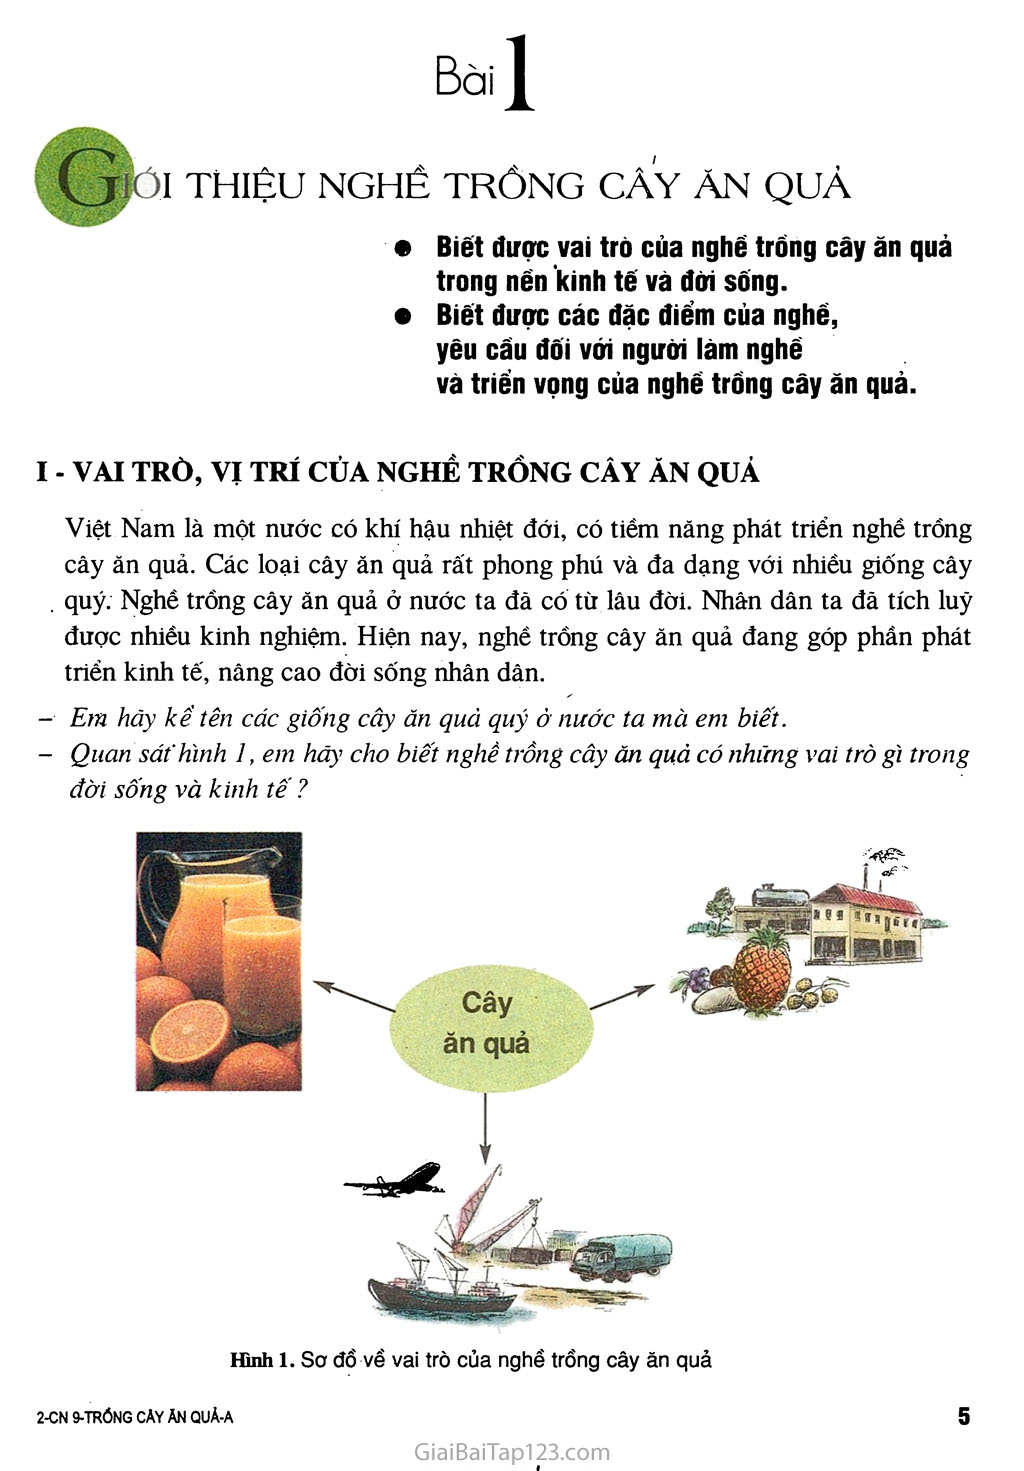 Bài 1. Giới thiệu nghề trồng cây ăn quả trang 1